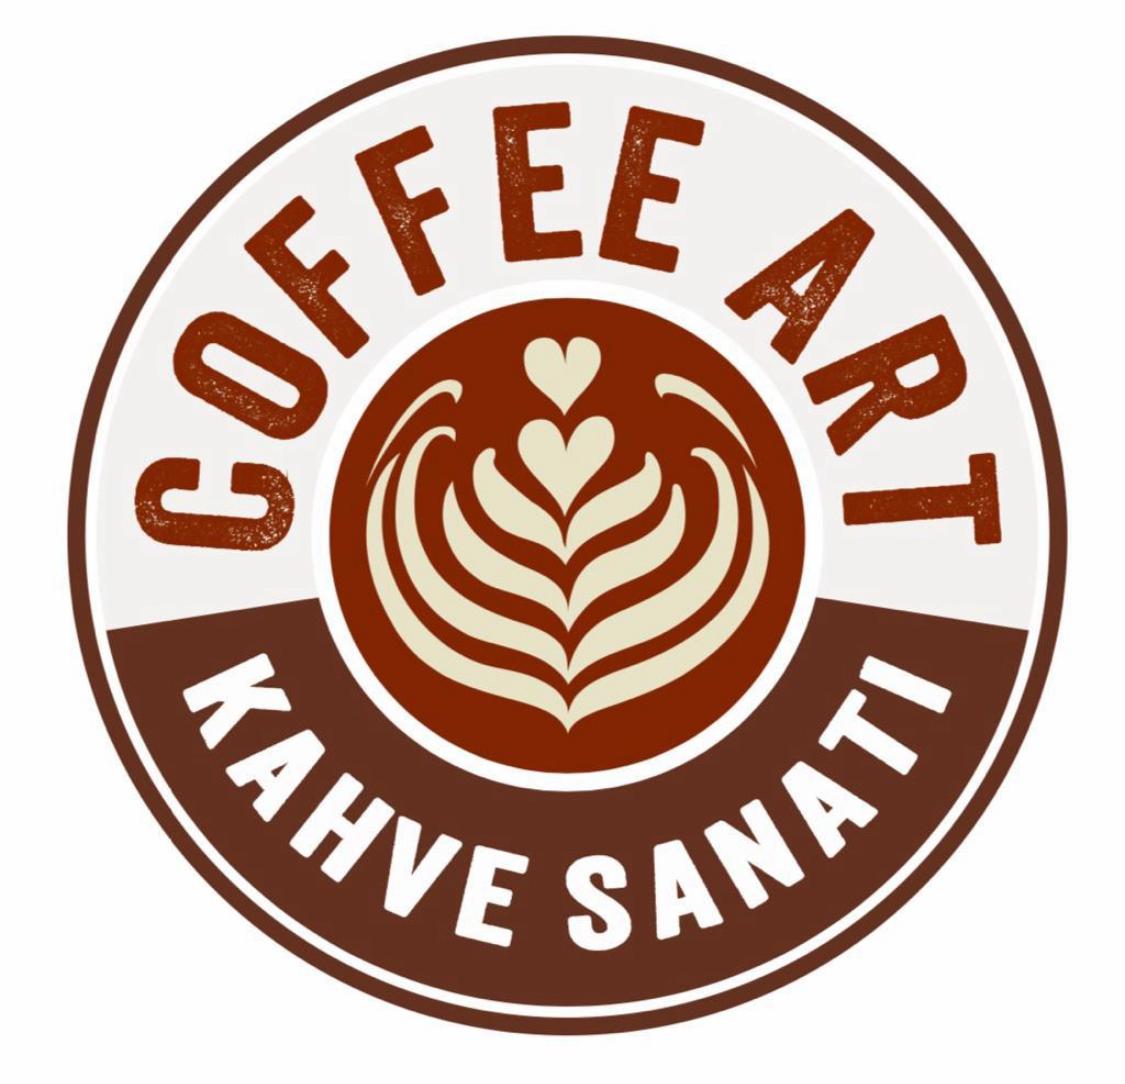 COFFEE ART ŞANLIURFA YILBAŞI PROGRAMI YAPMAYACAĞINI DUYURDU 